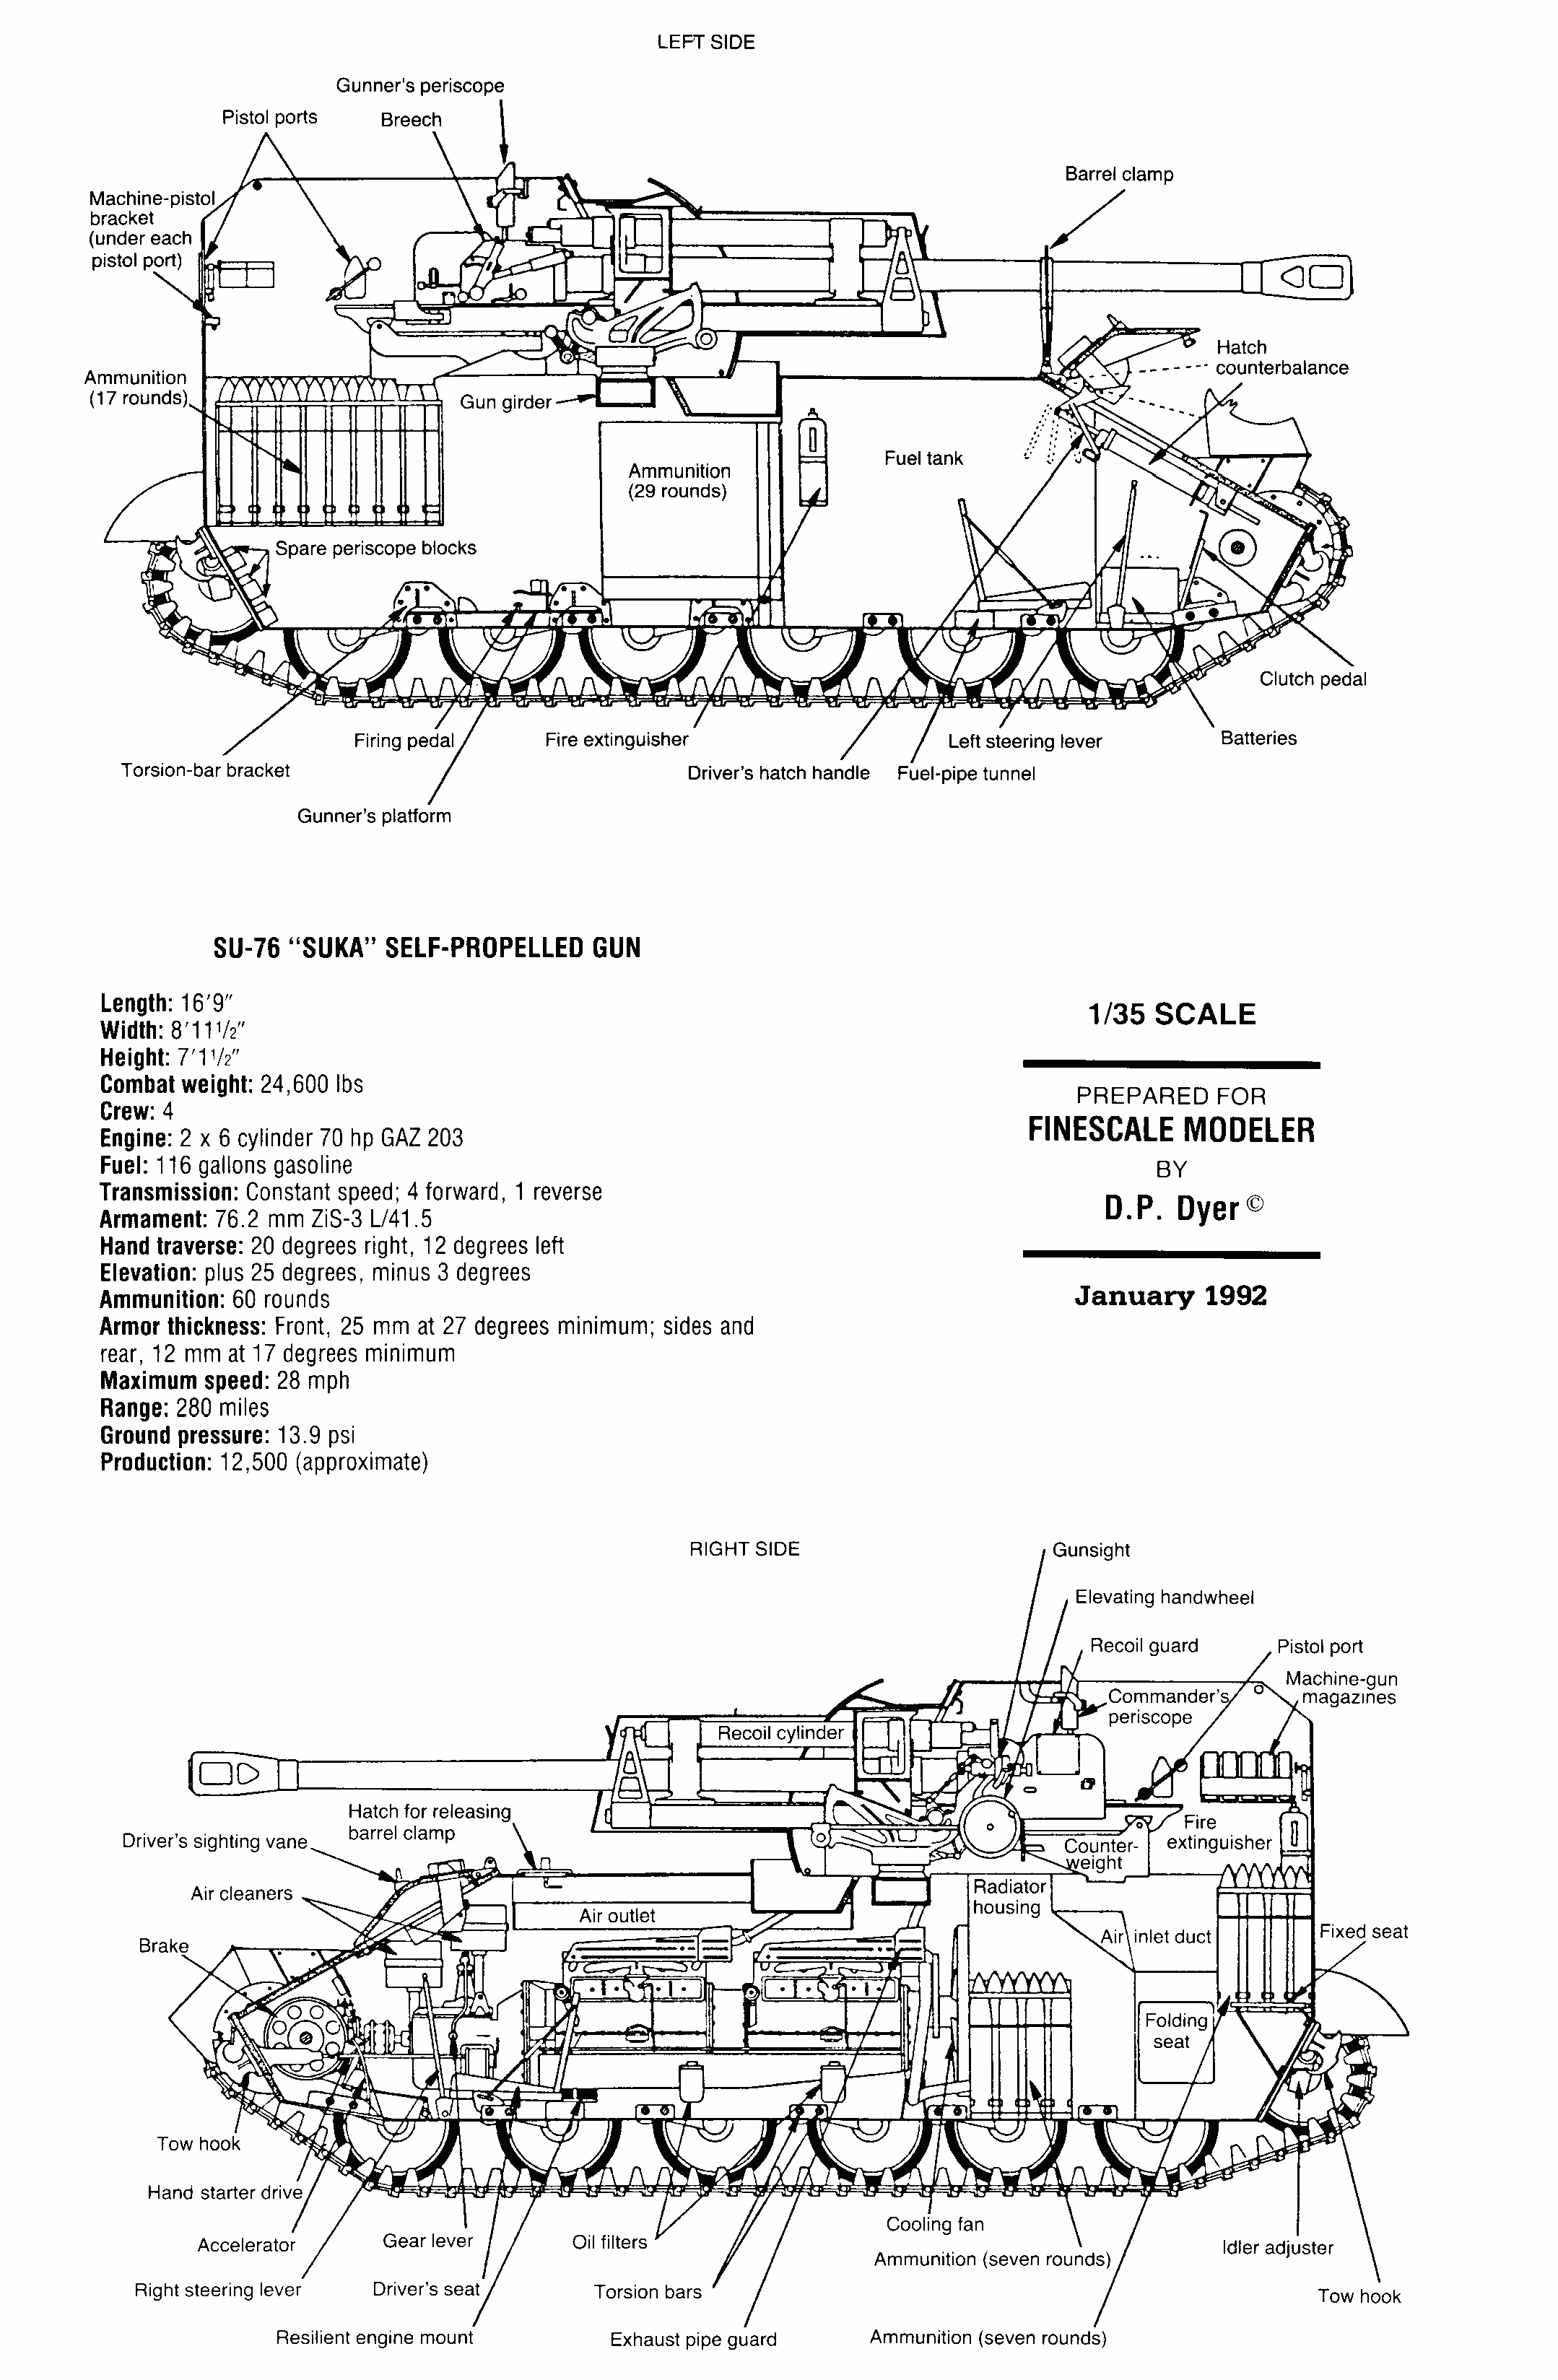 SU-76 blueprint